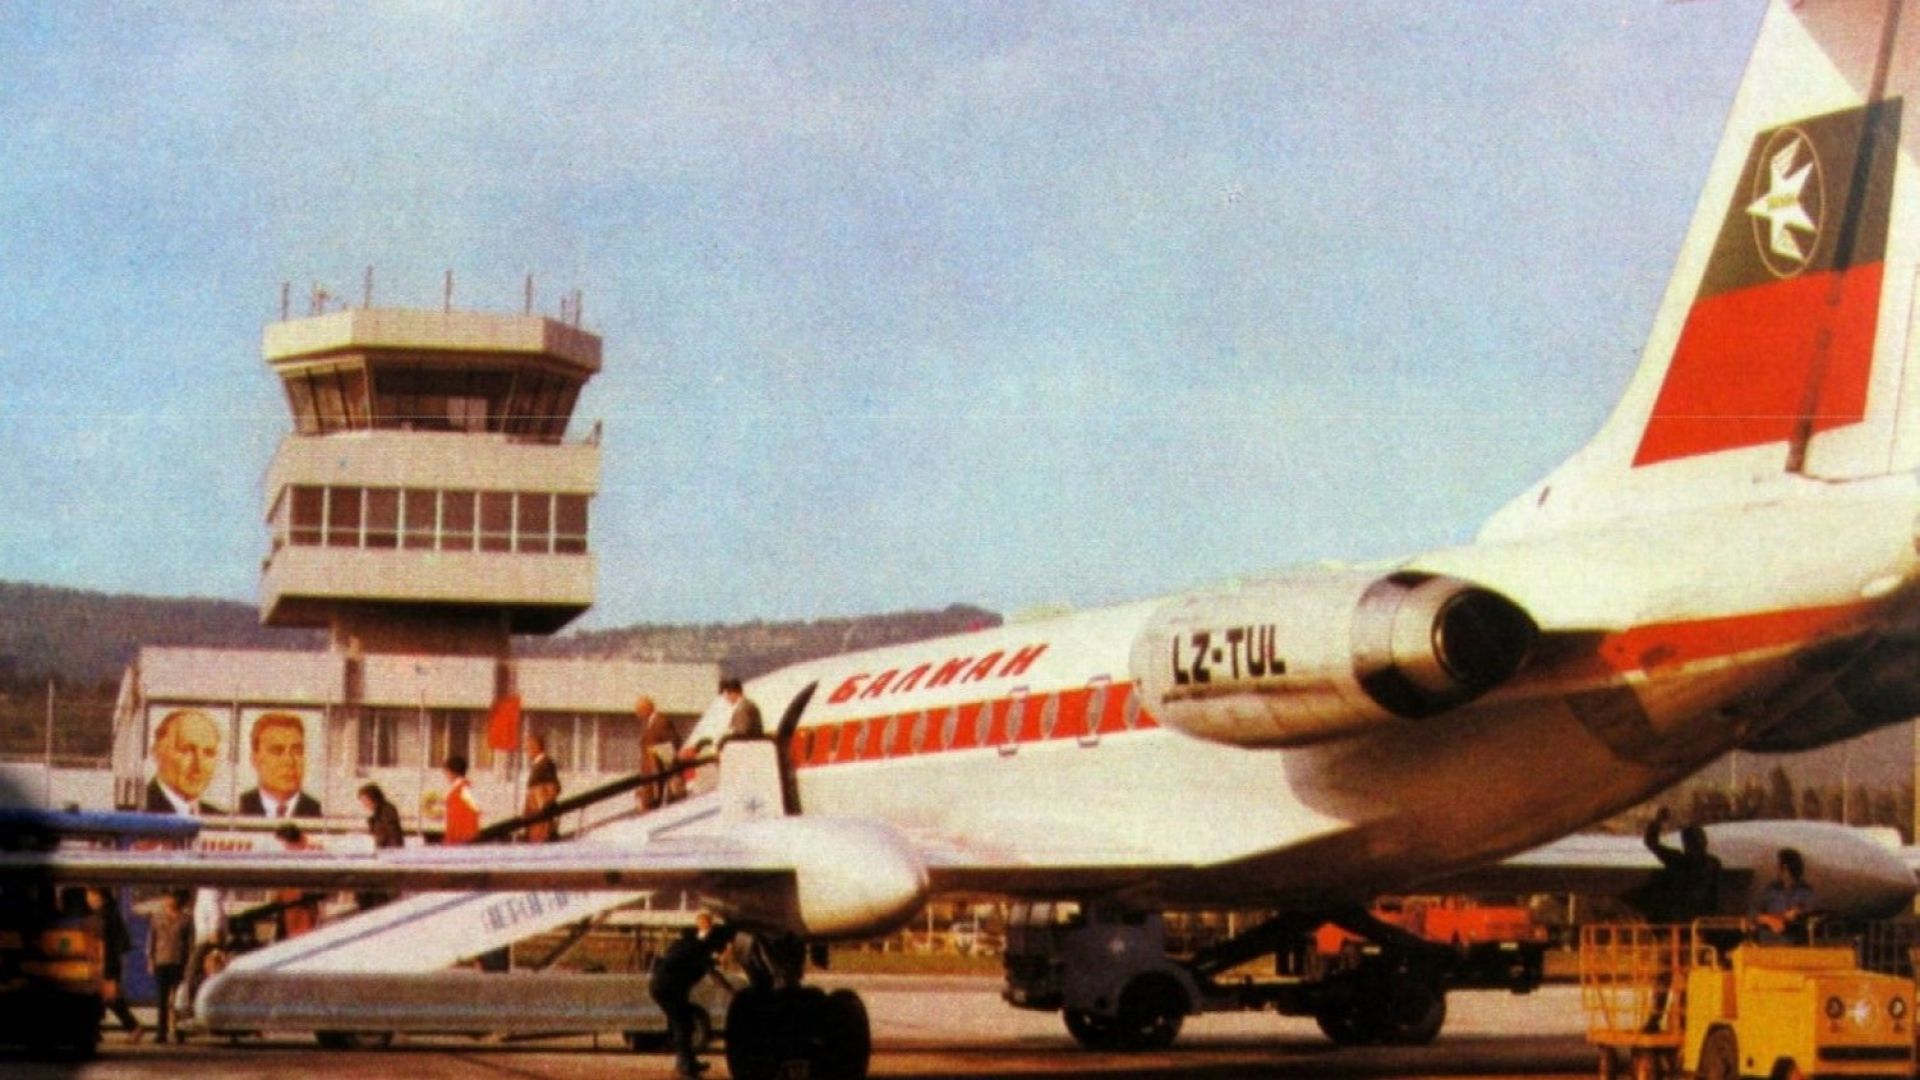 Октомври 1982 г. Самолет Ту-134 изпълнява чартърен полет по маршрута